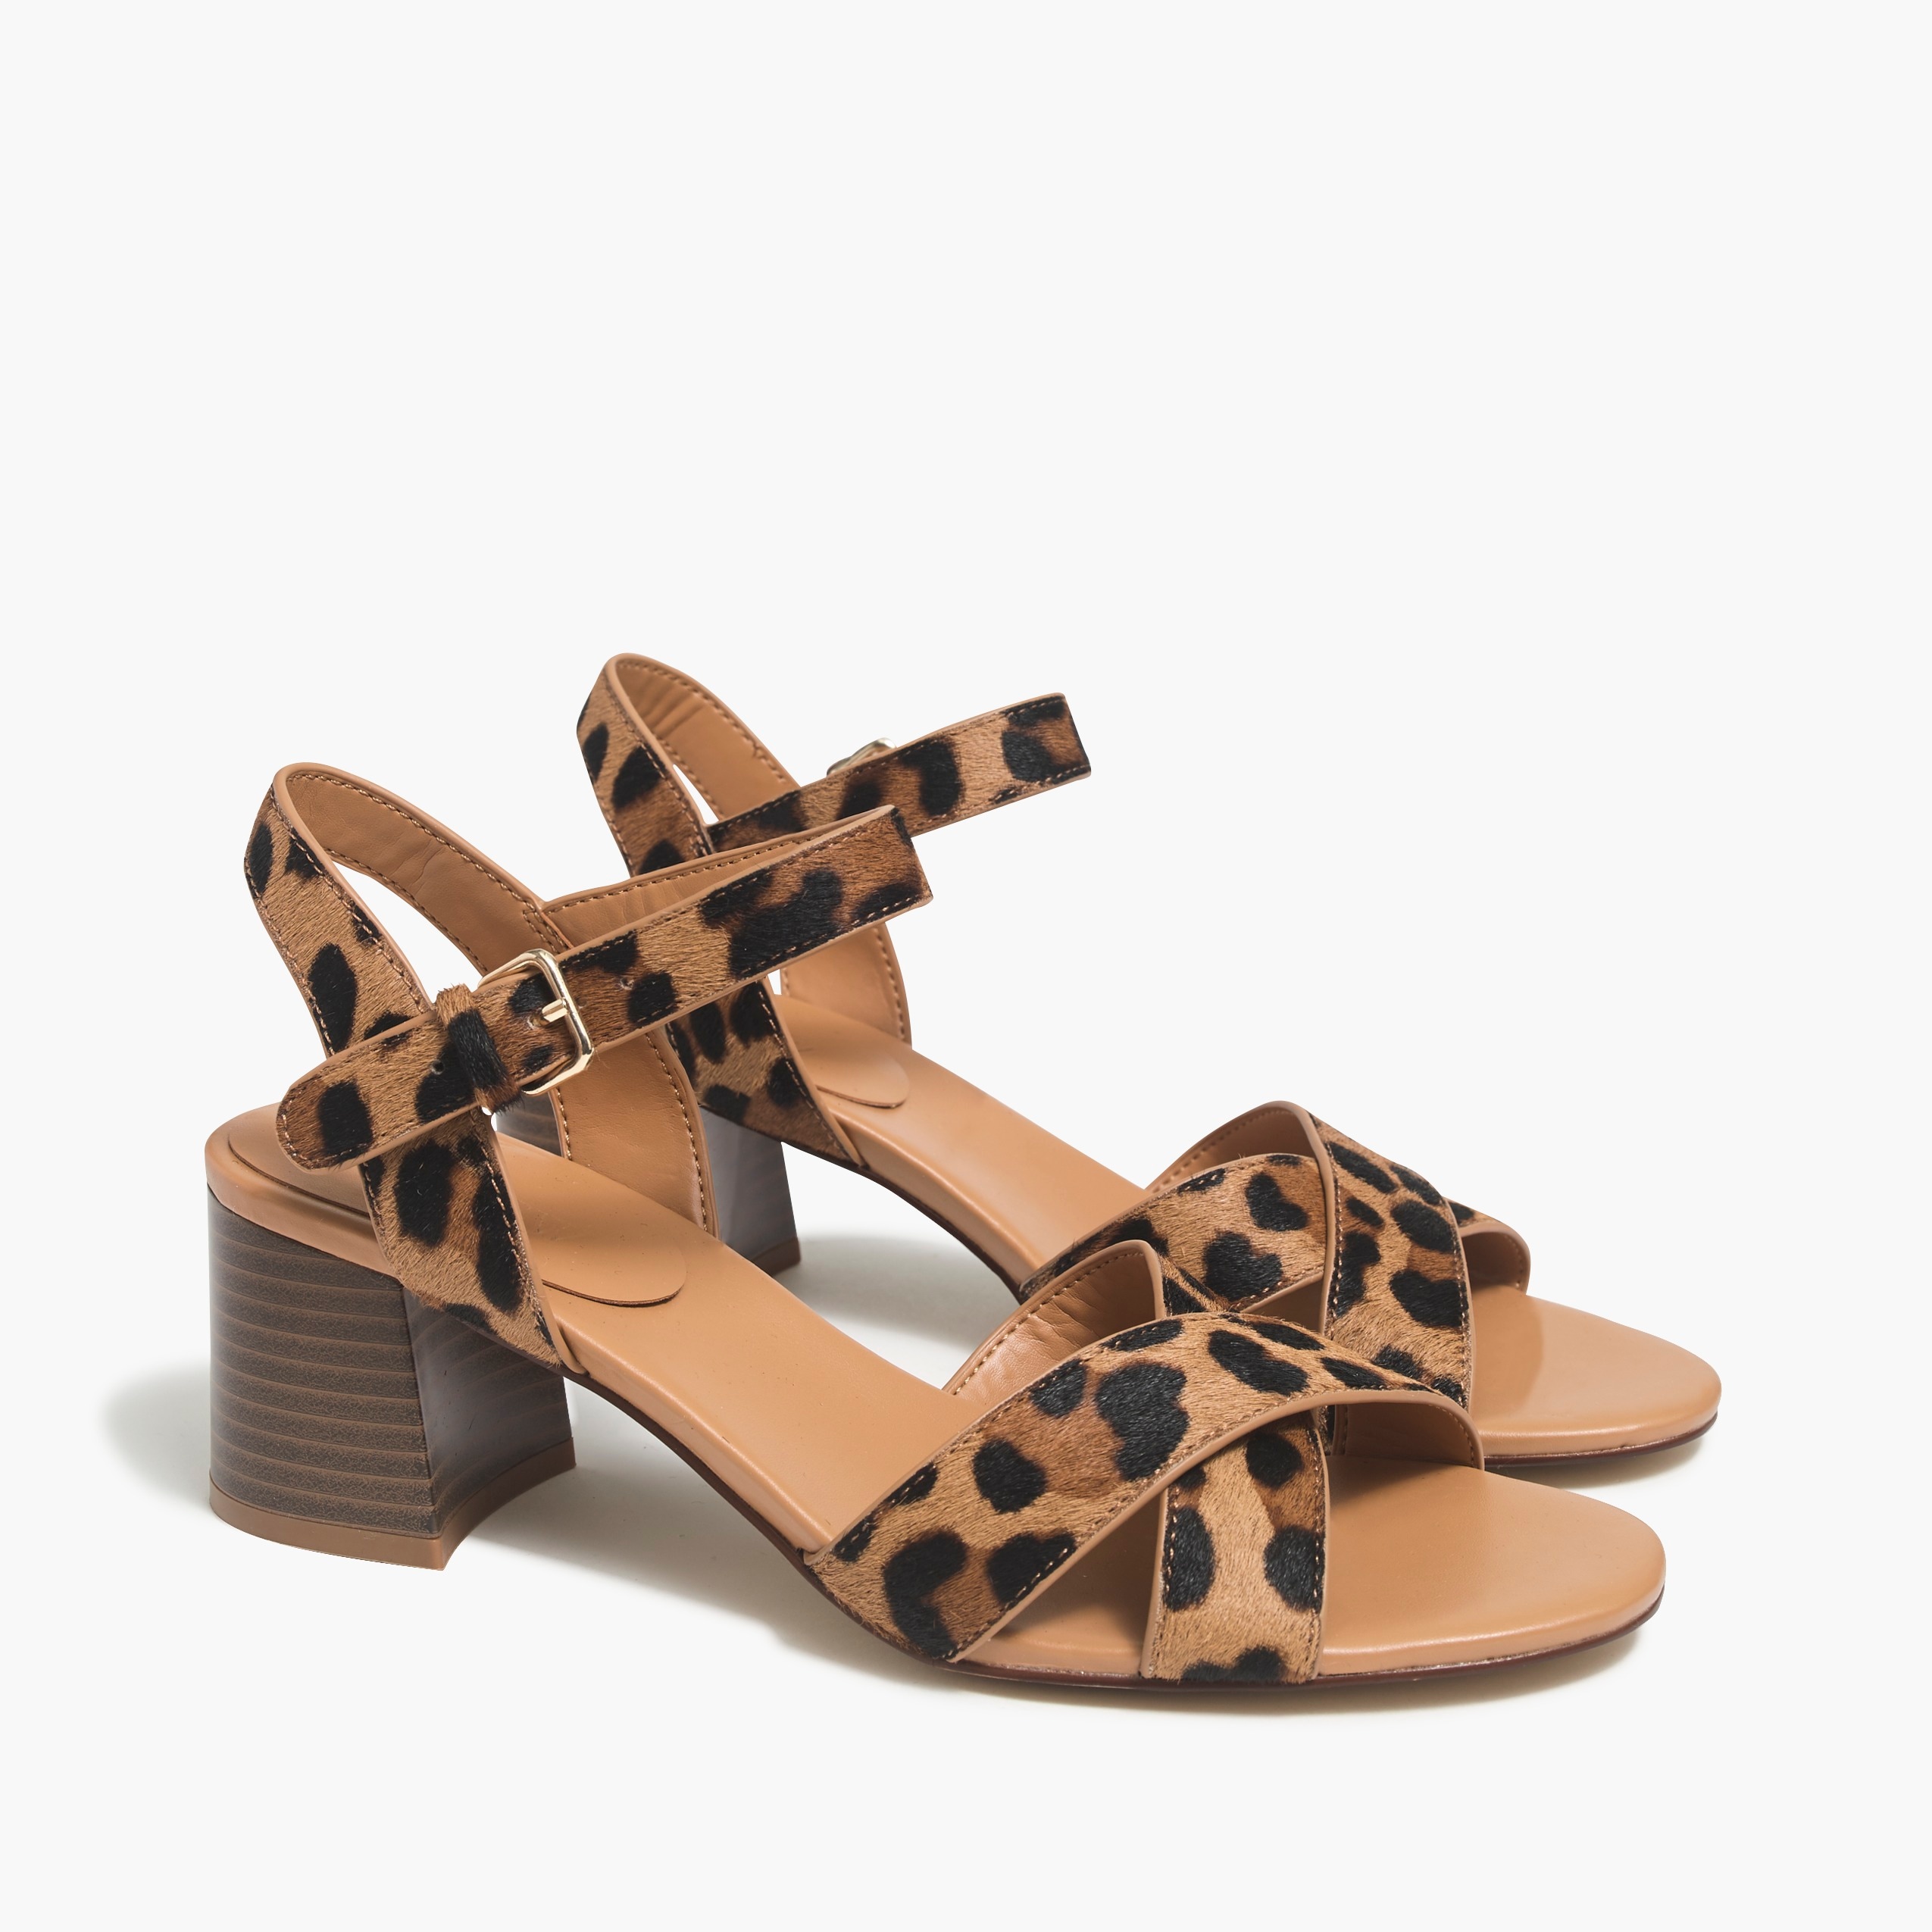 leopard block heels